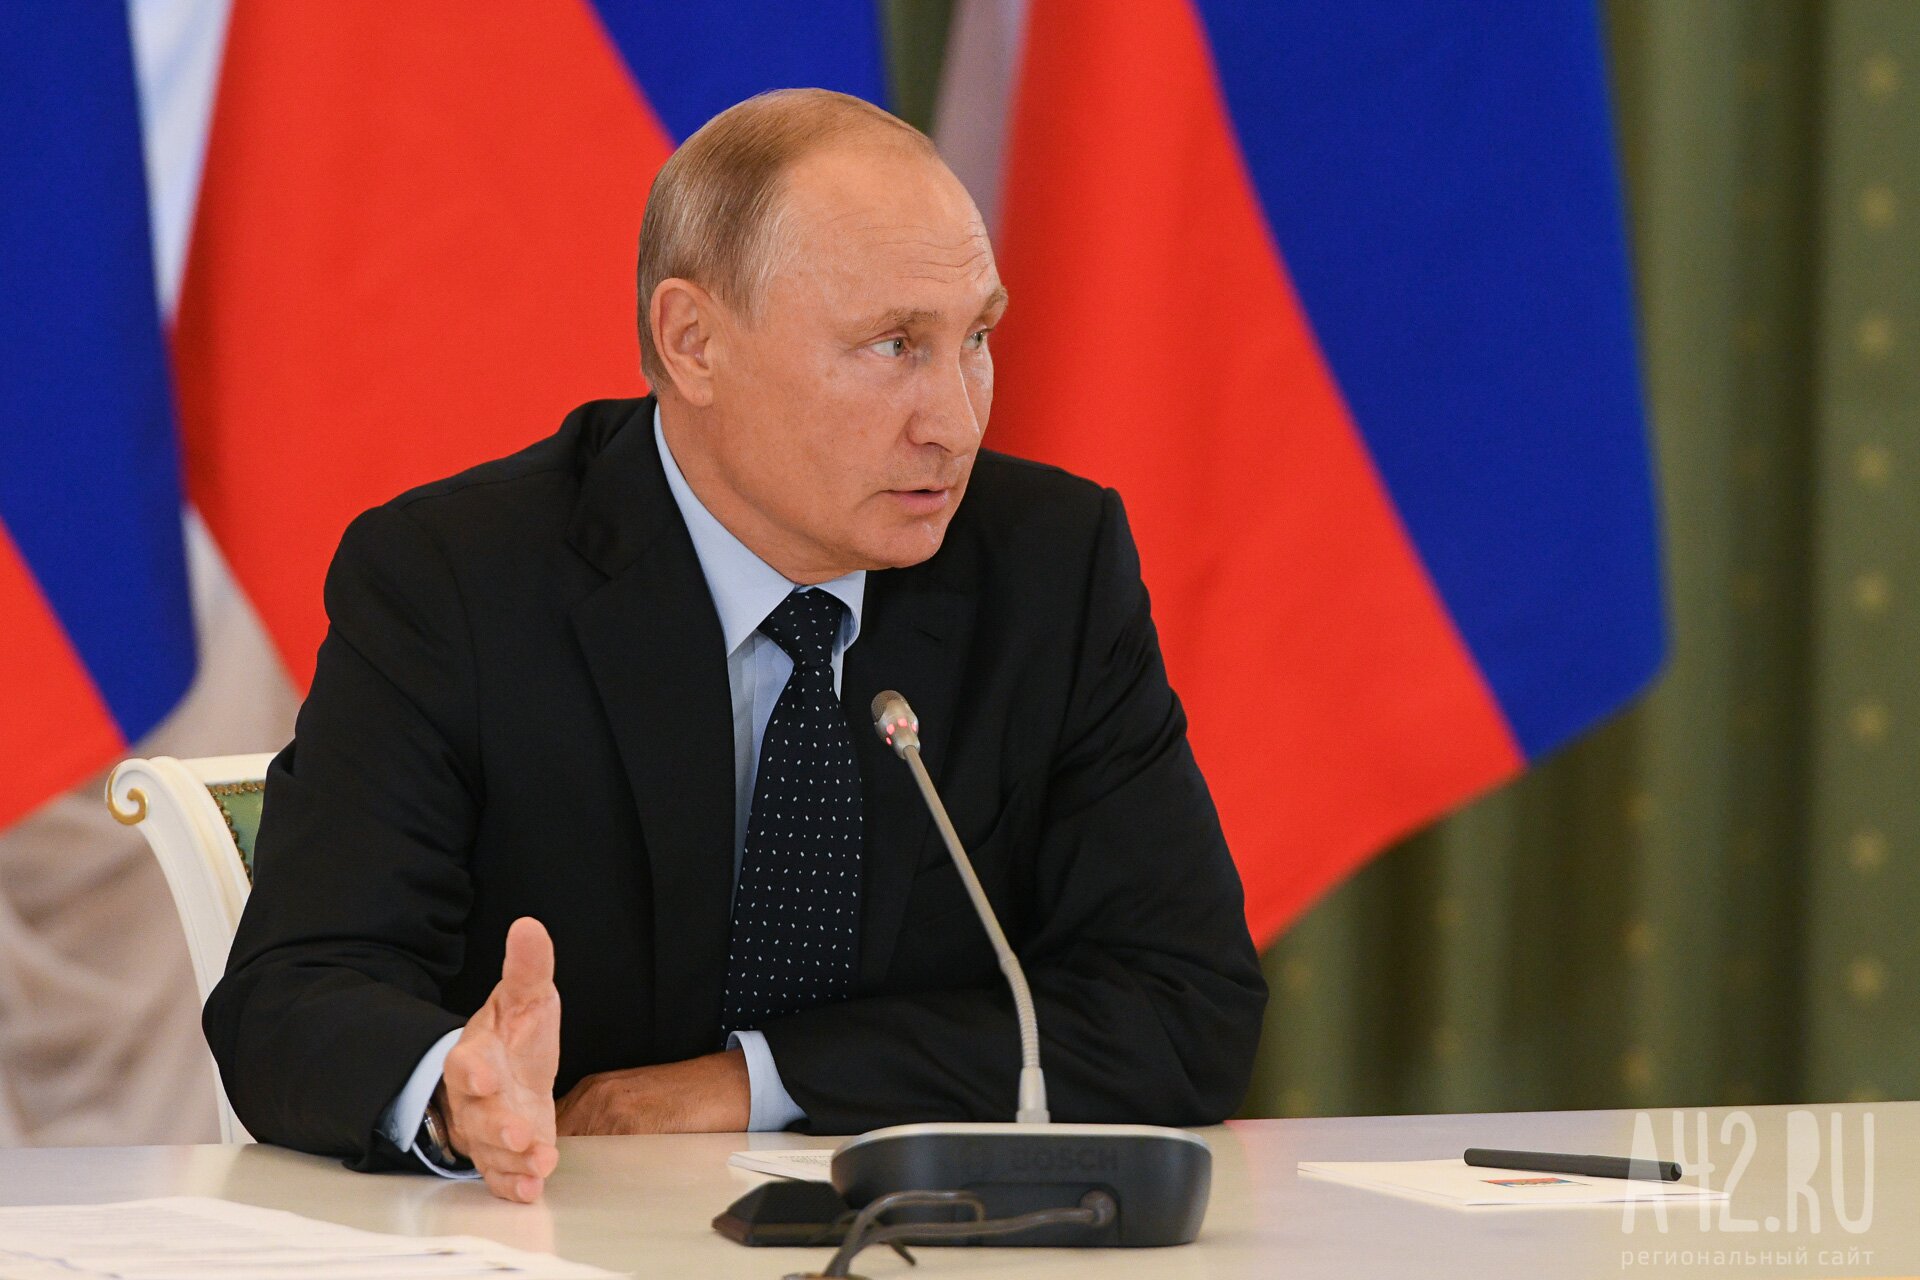 ВЦИОМ: Путину доверяет 81% опрошенных россиян, его работу на посту президента одобряют 79%